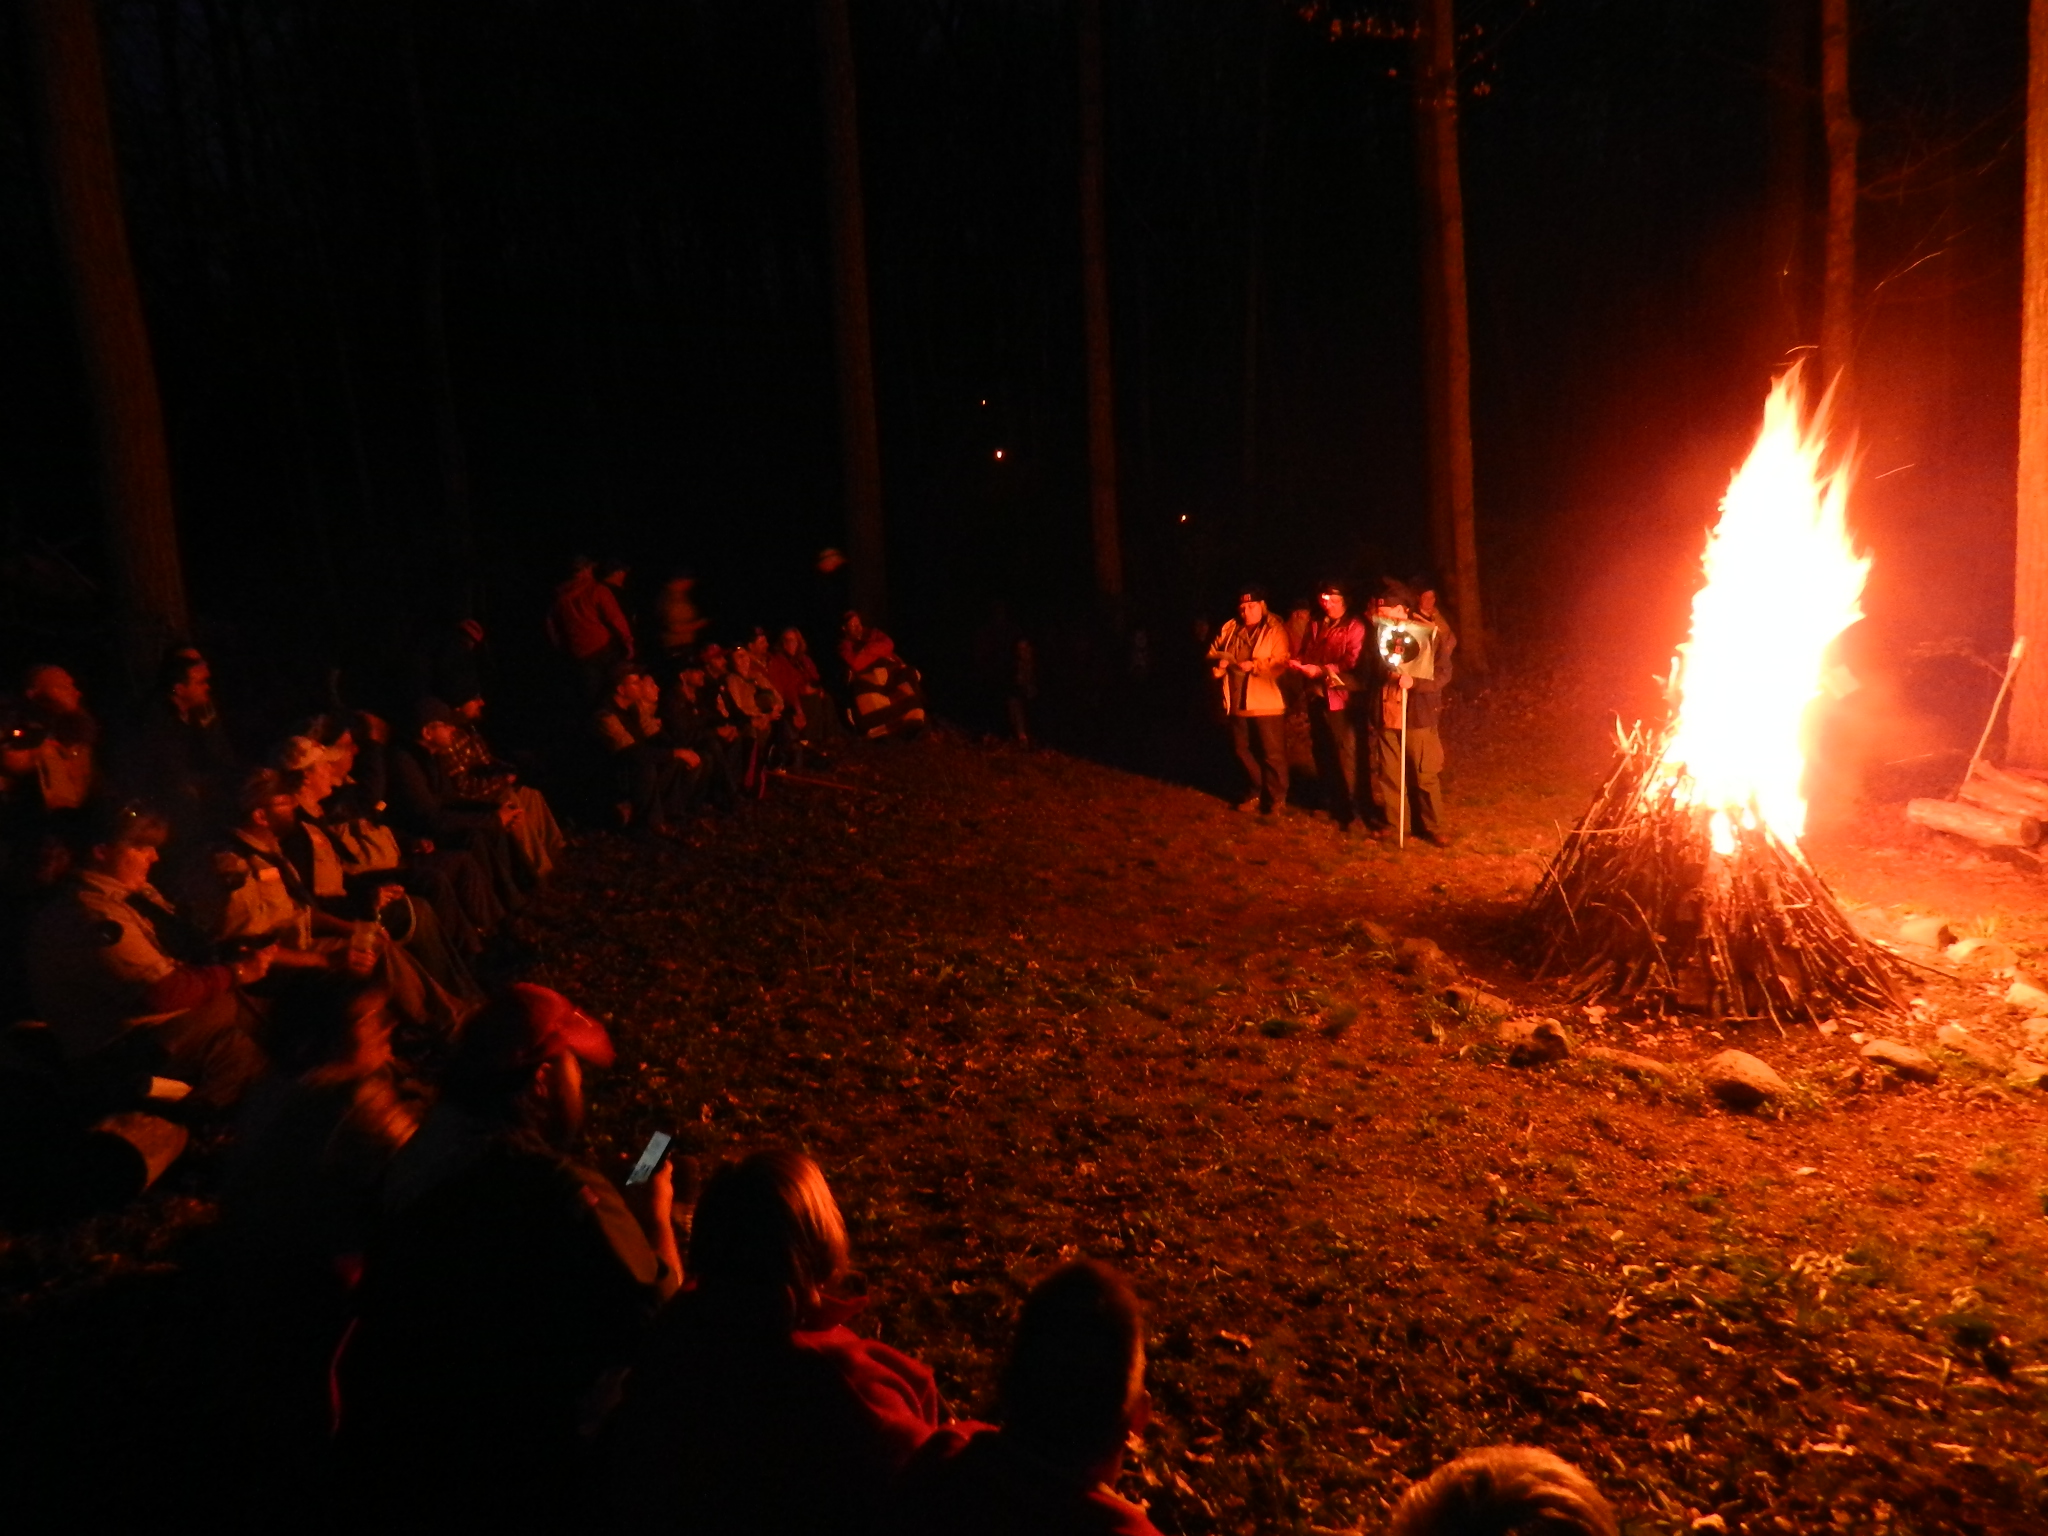 Night_campfire.JPG